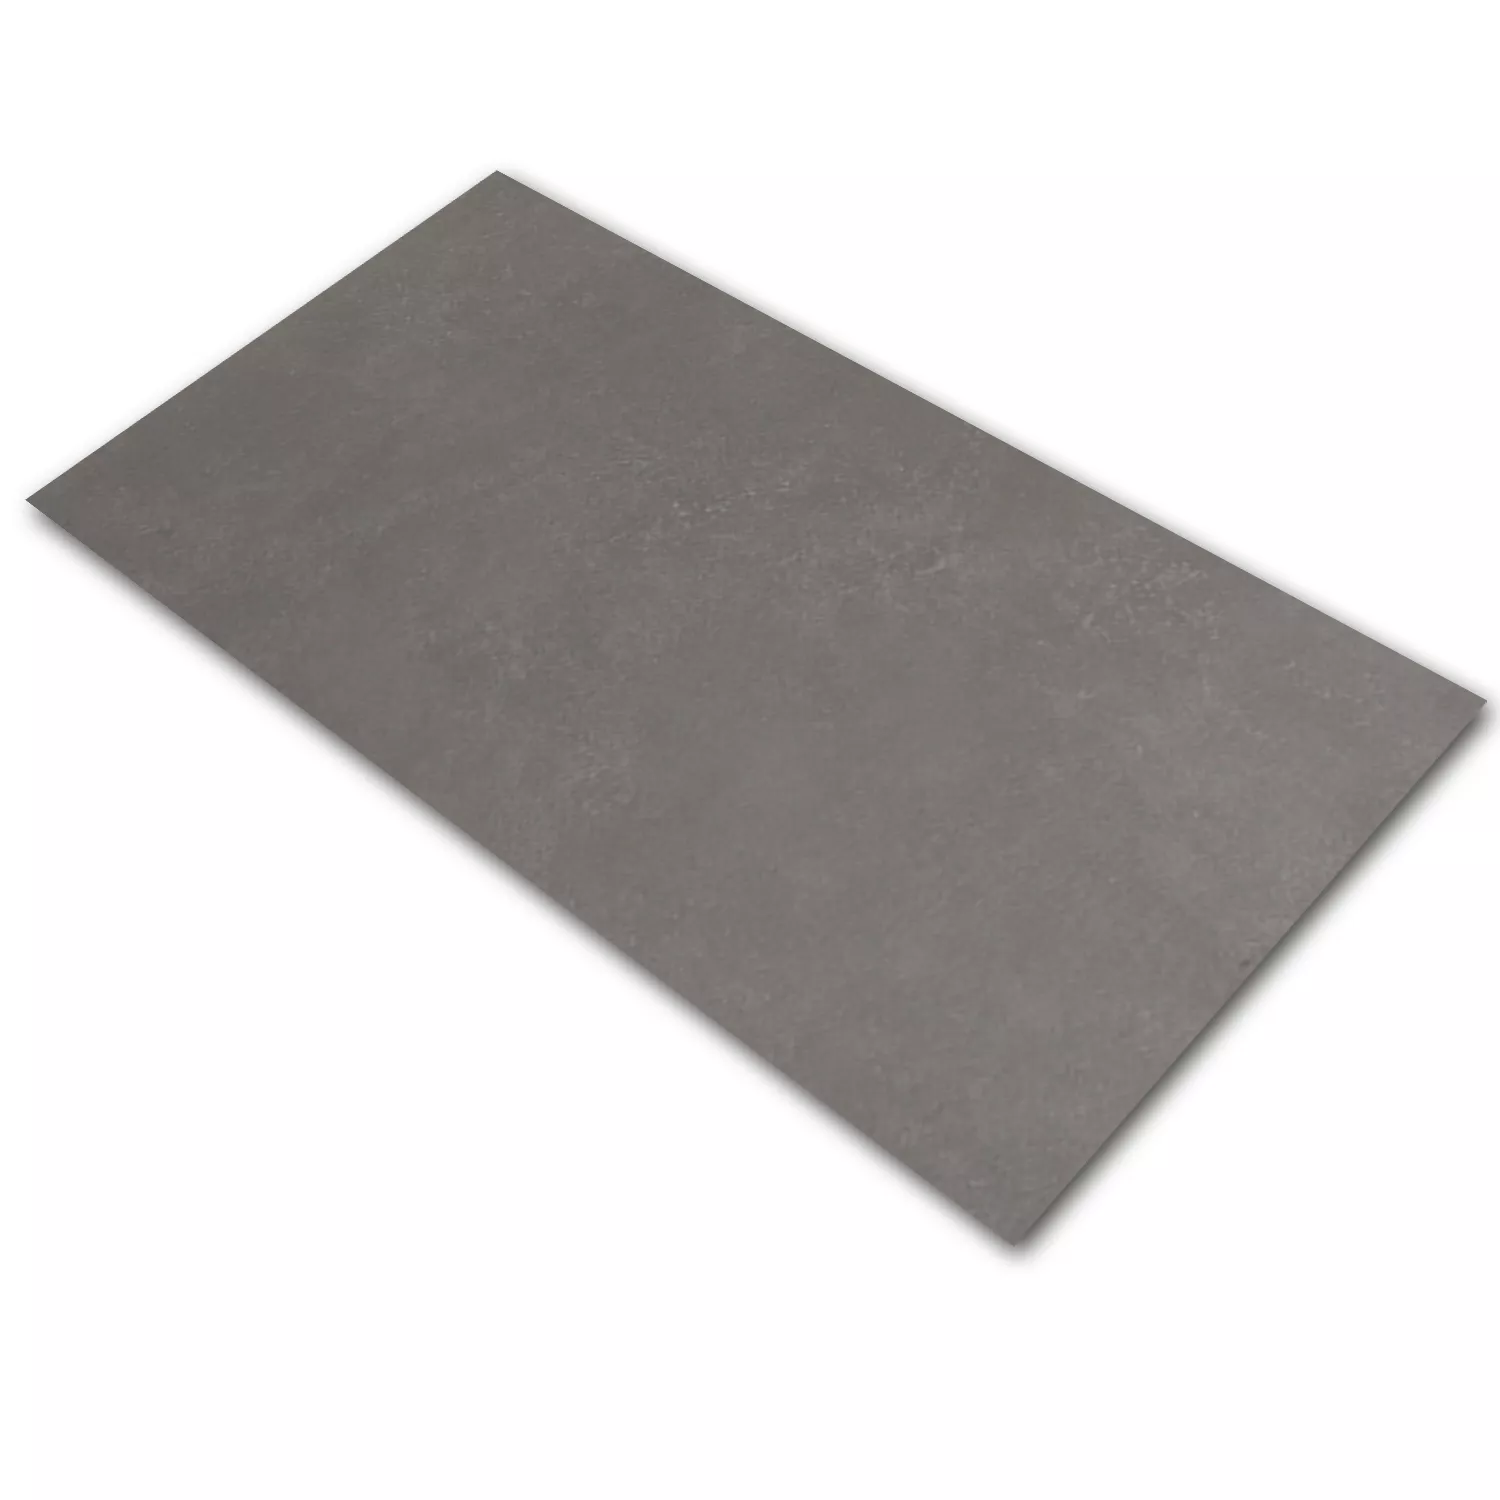 Sample Floor Tiles Hayat Dark Grey 37x75cm